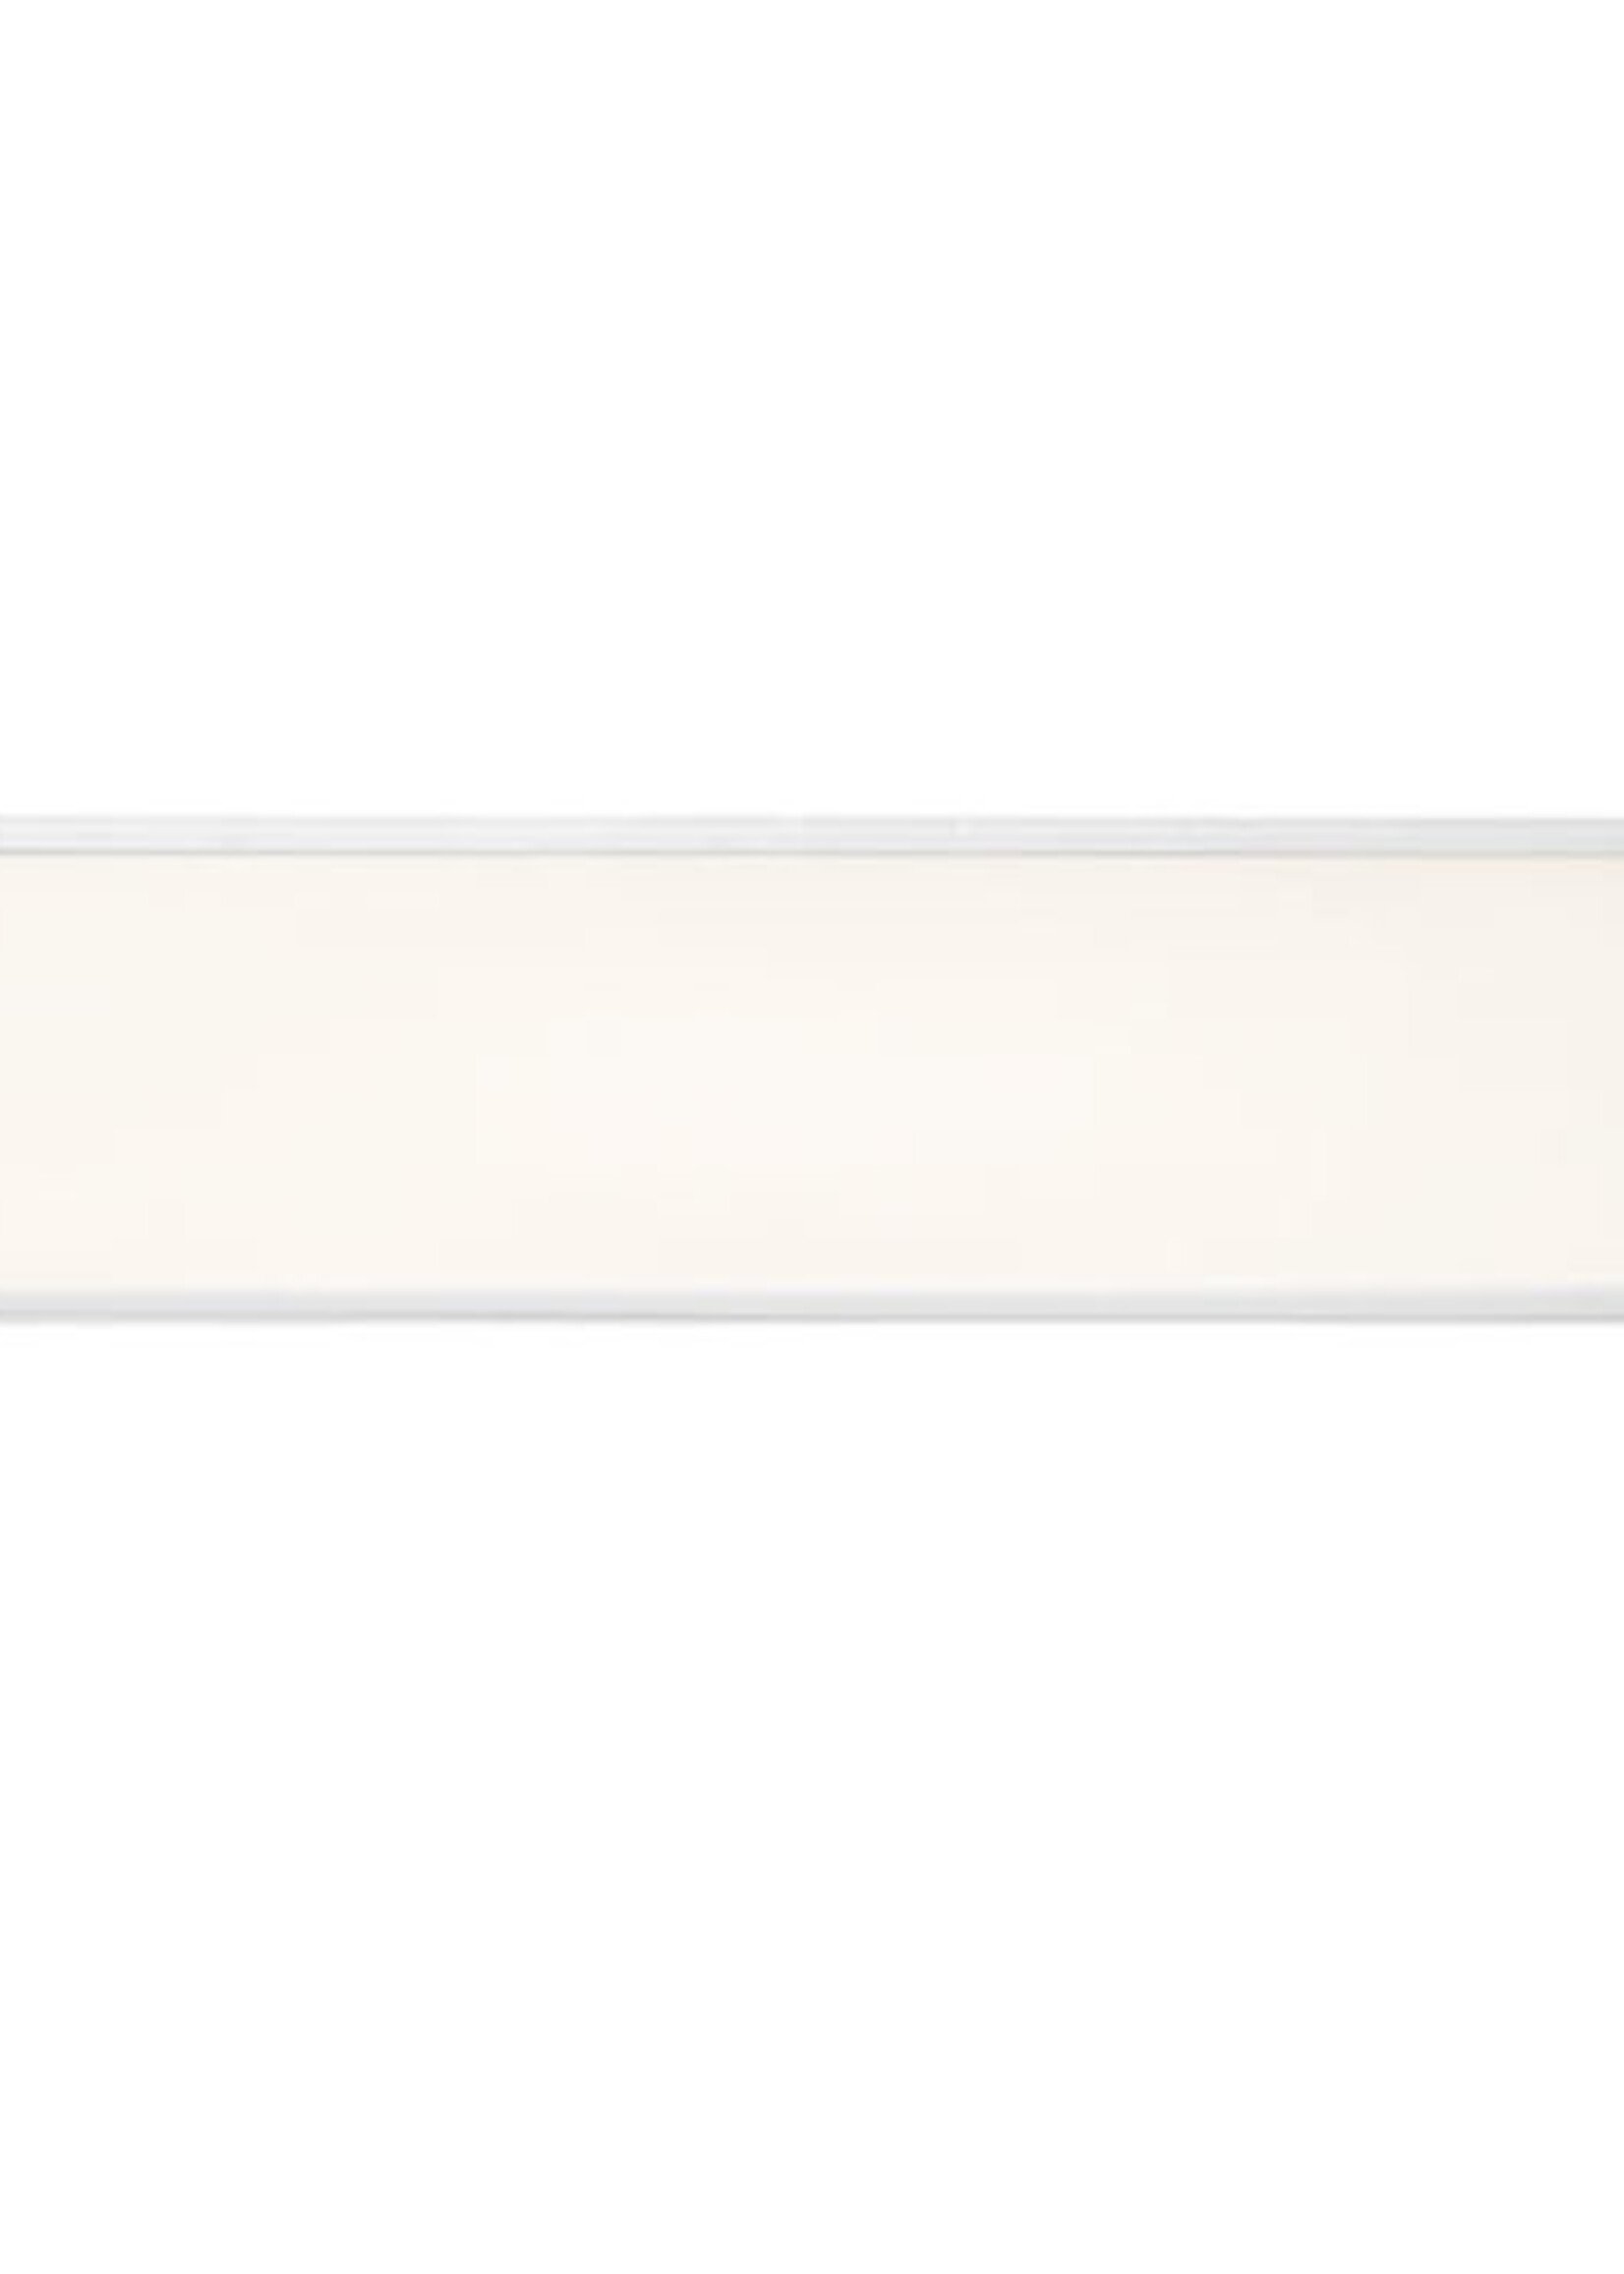 LEDWINKEL-Online LED Panel 30x150cm 40W 120lm/W Edge-lit